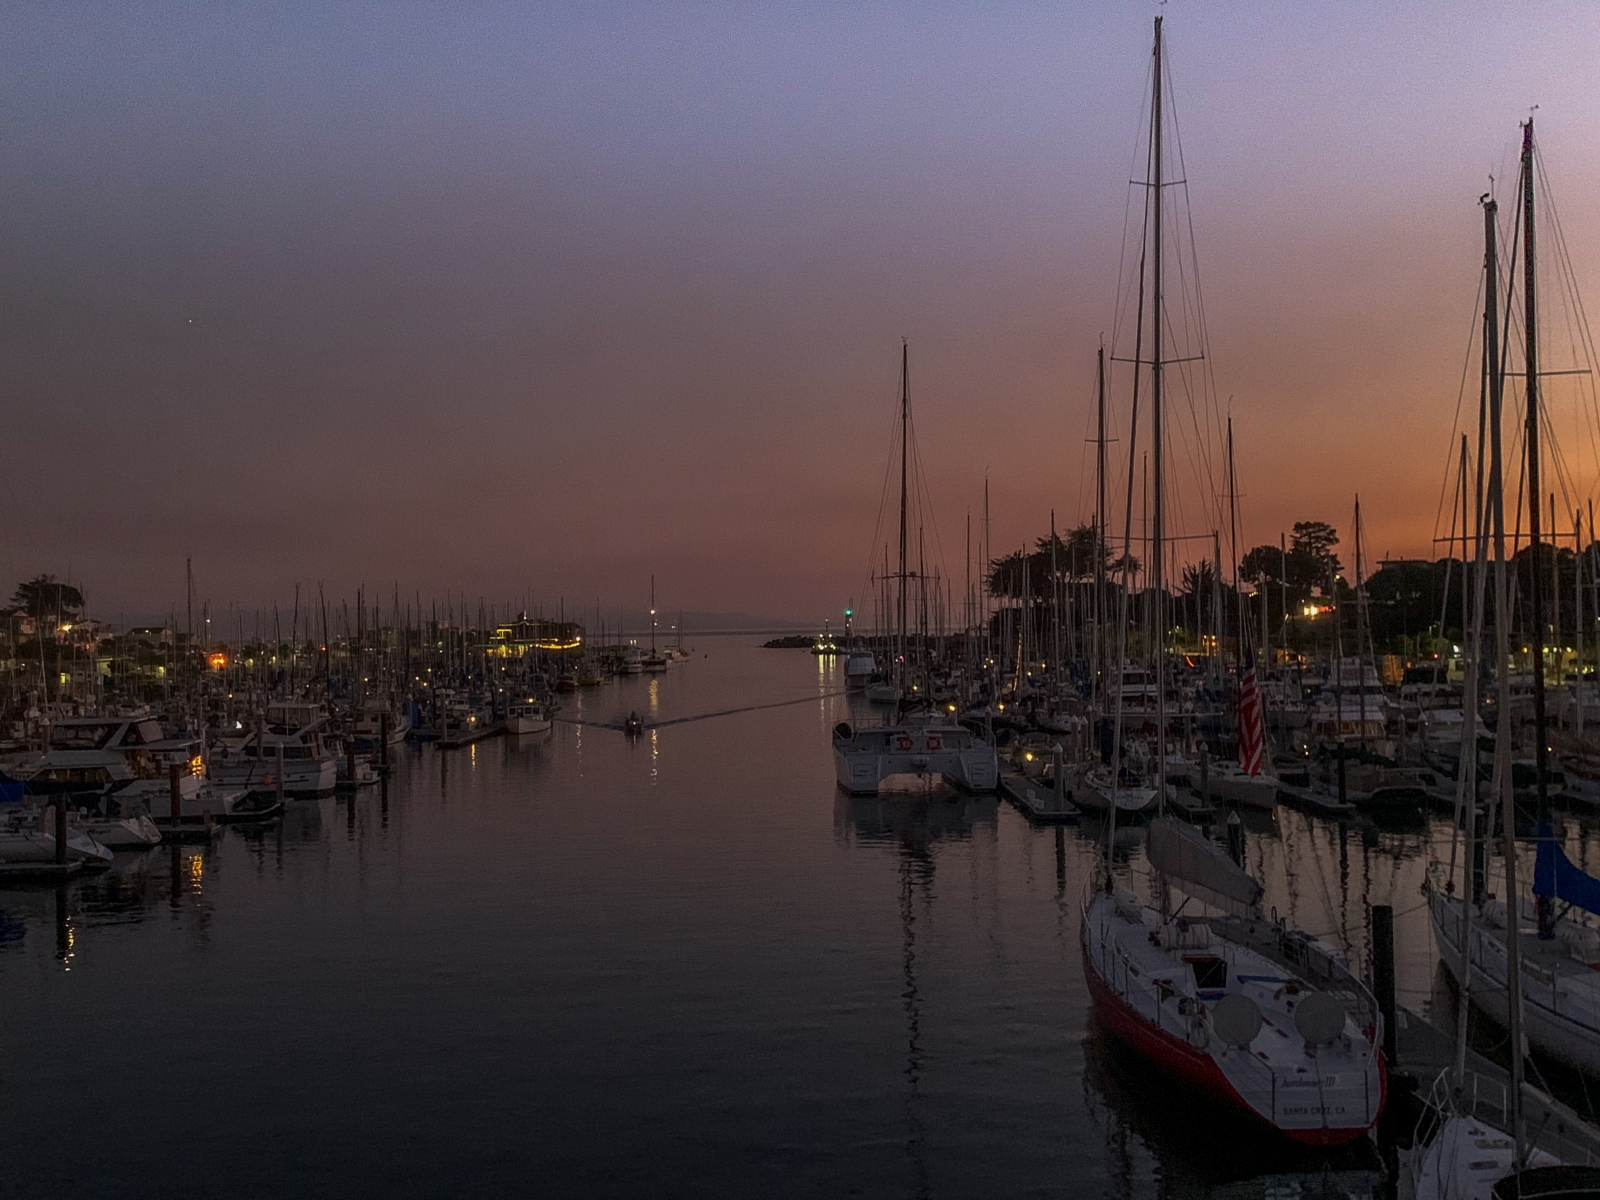 The shipyard of Santa Cruz at sunset